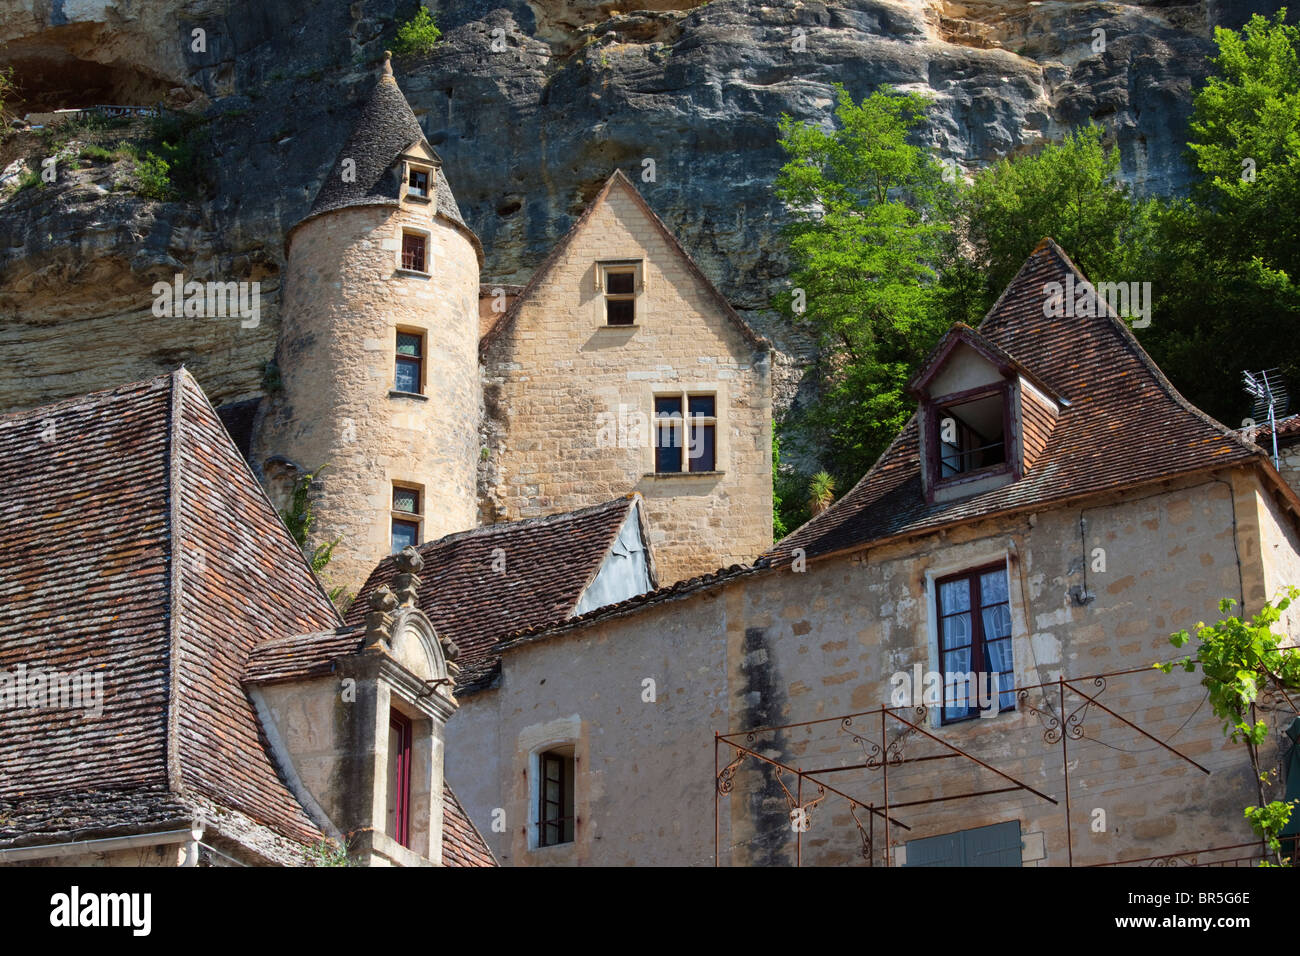 Buildings against cliff, La Roque-Gageac; Dordogne; France Stock Photo